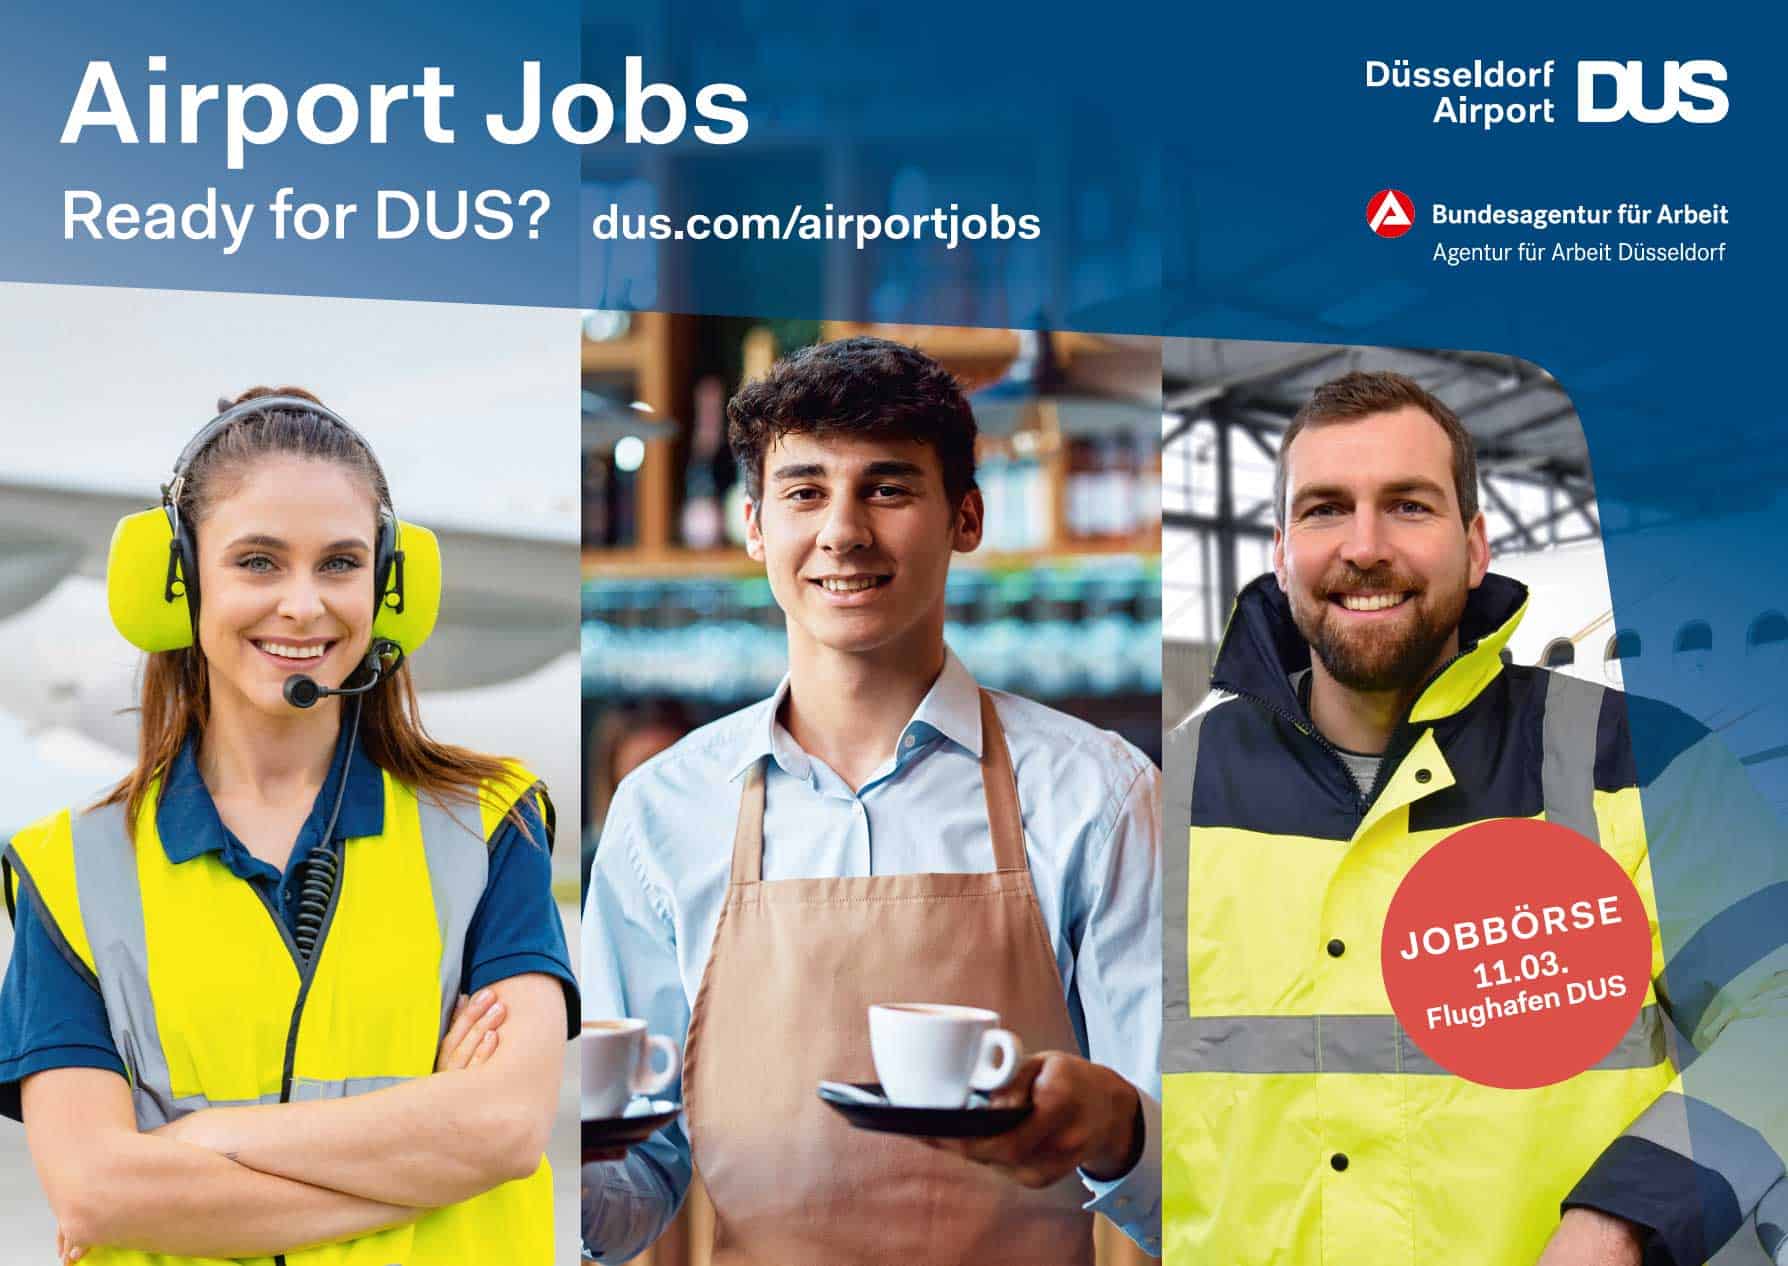 Recruiting-Kampagnenmotiv des Düsseldorf Airport und der Agentur für Arbeit Düsseldorf